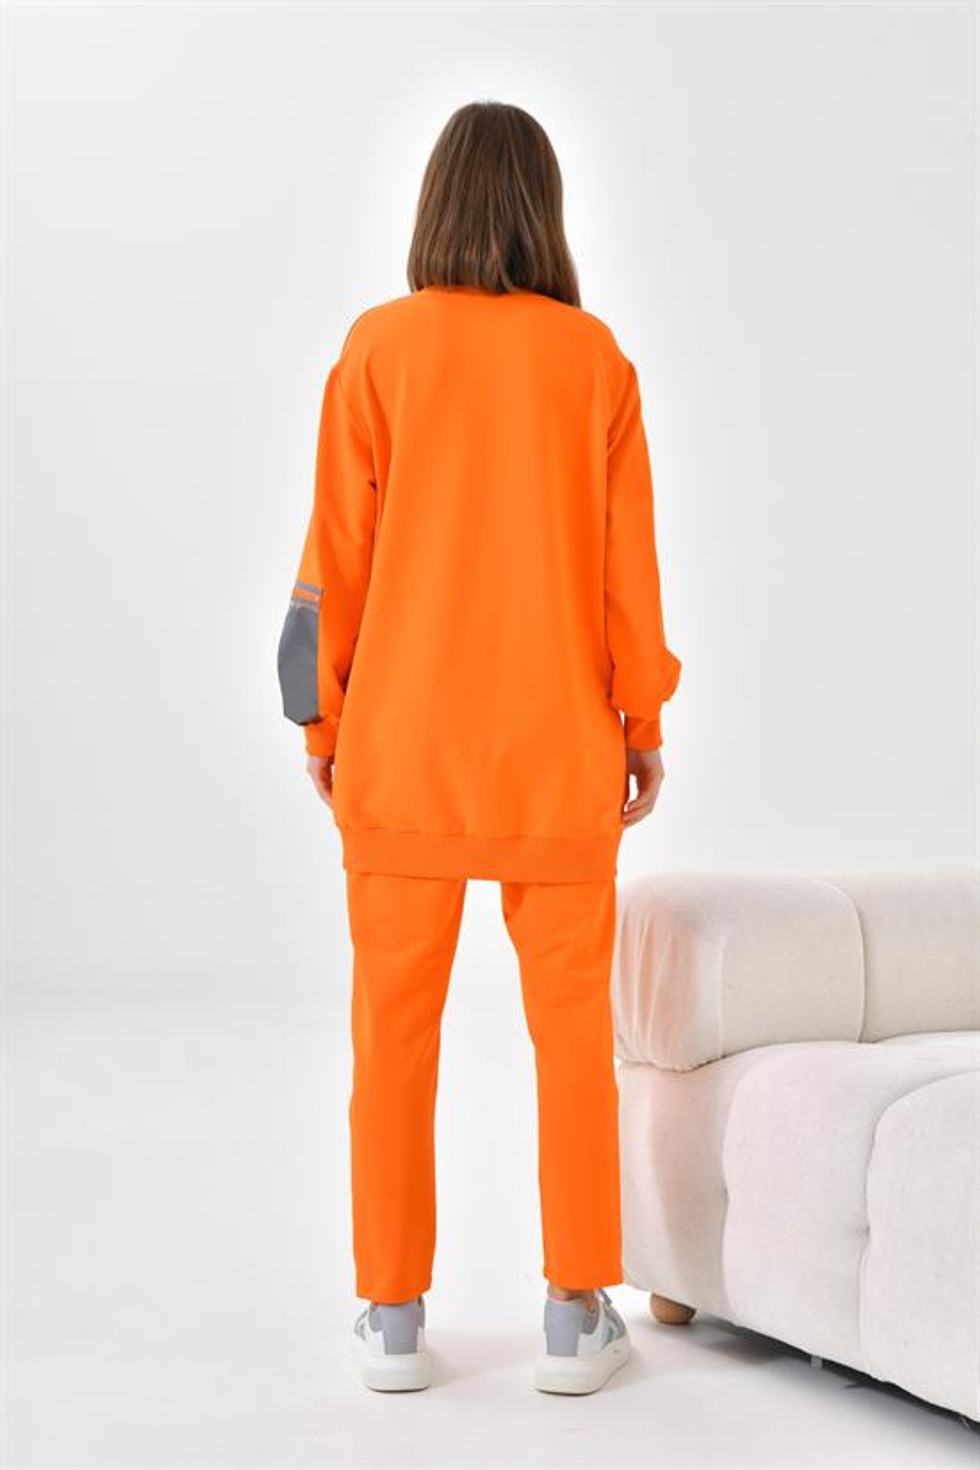 Ftz Women Kadın 2 İplik Takım Orange